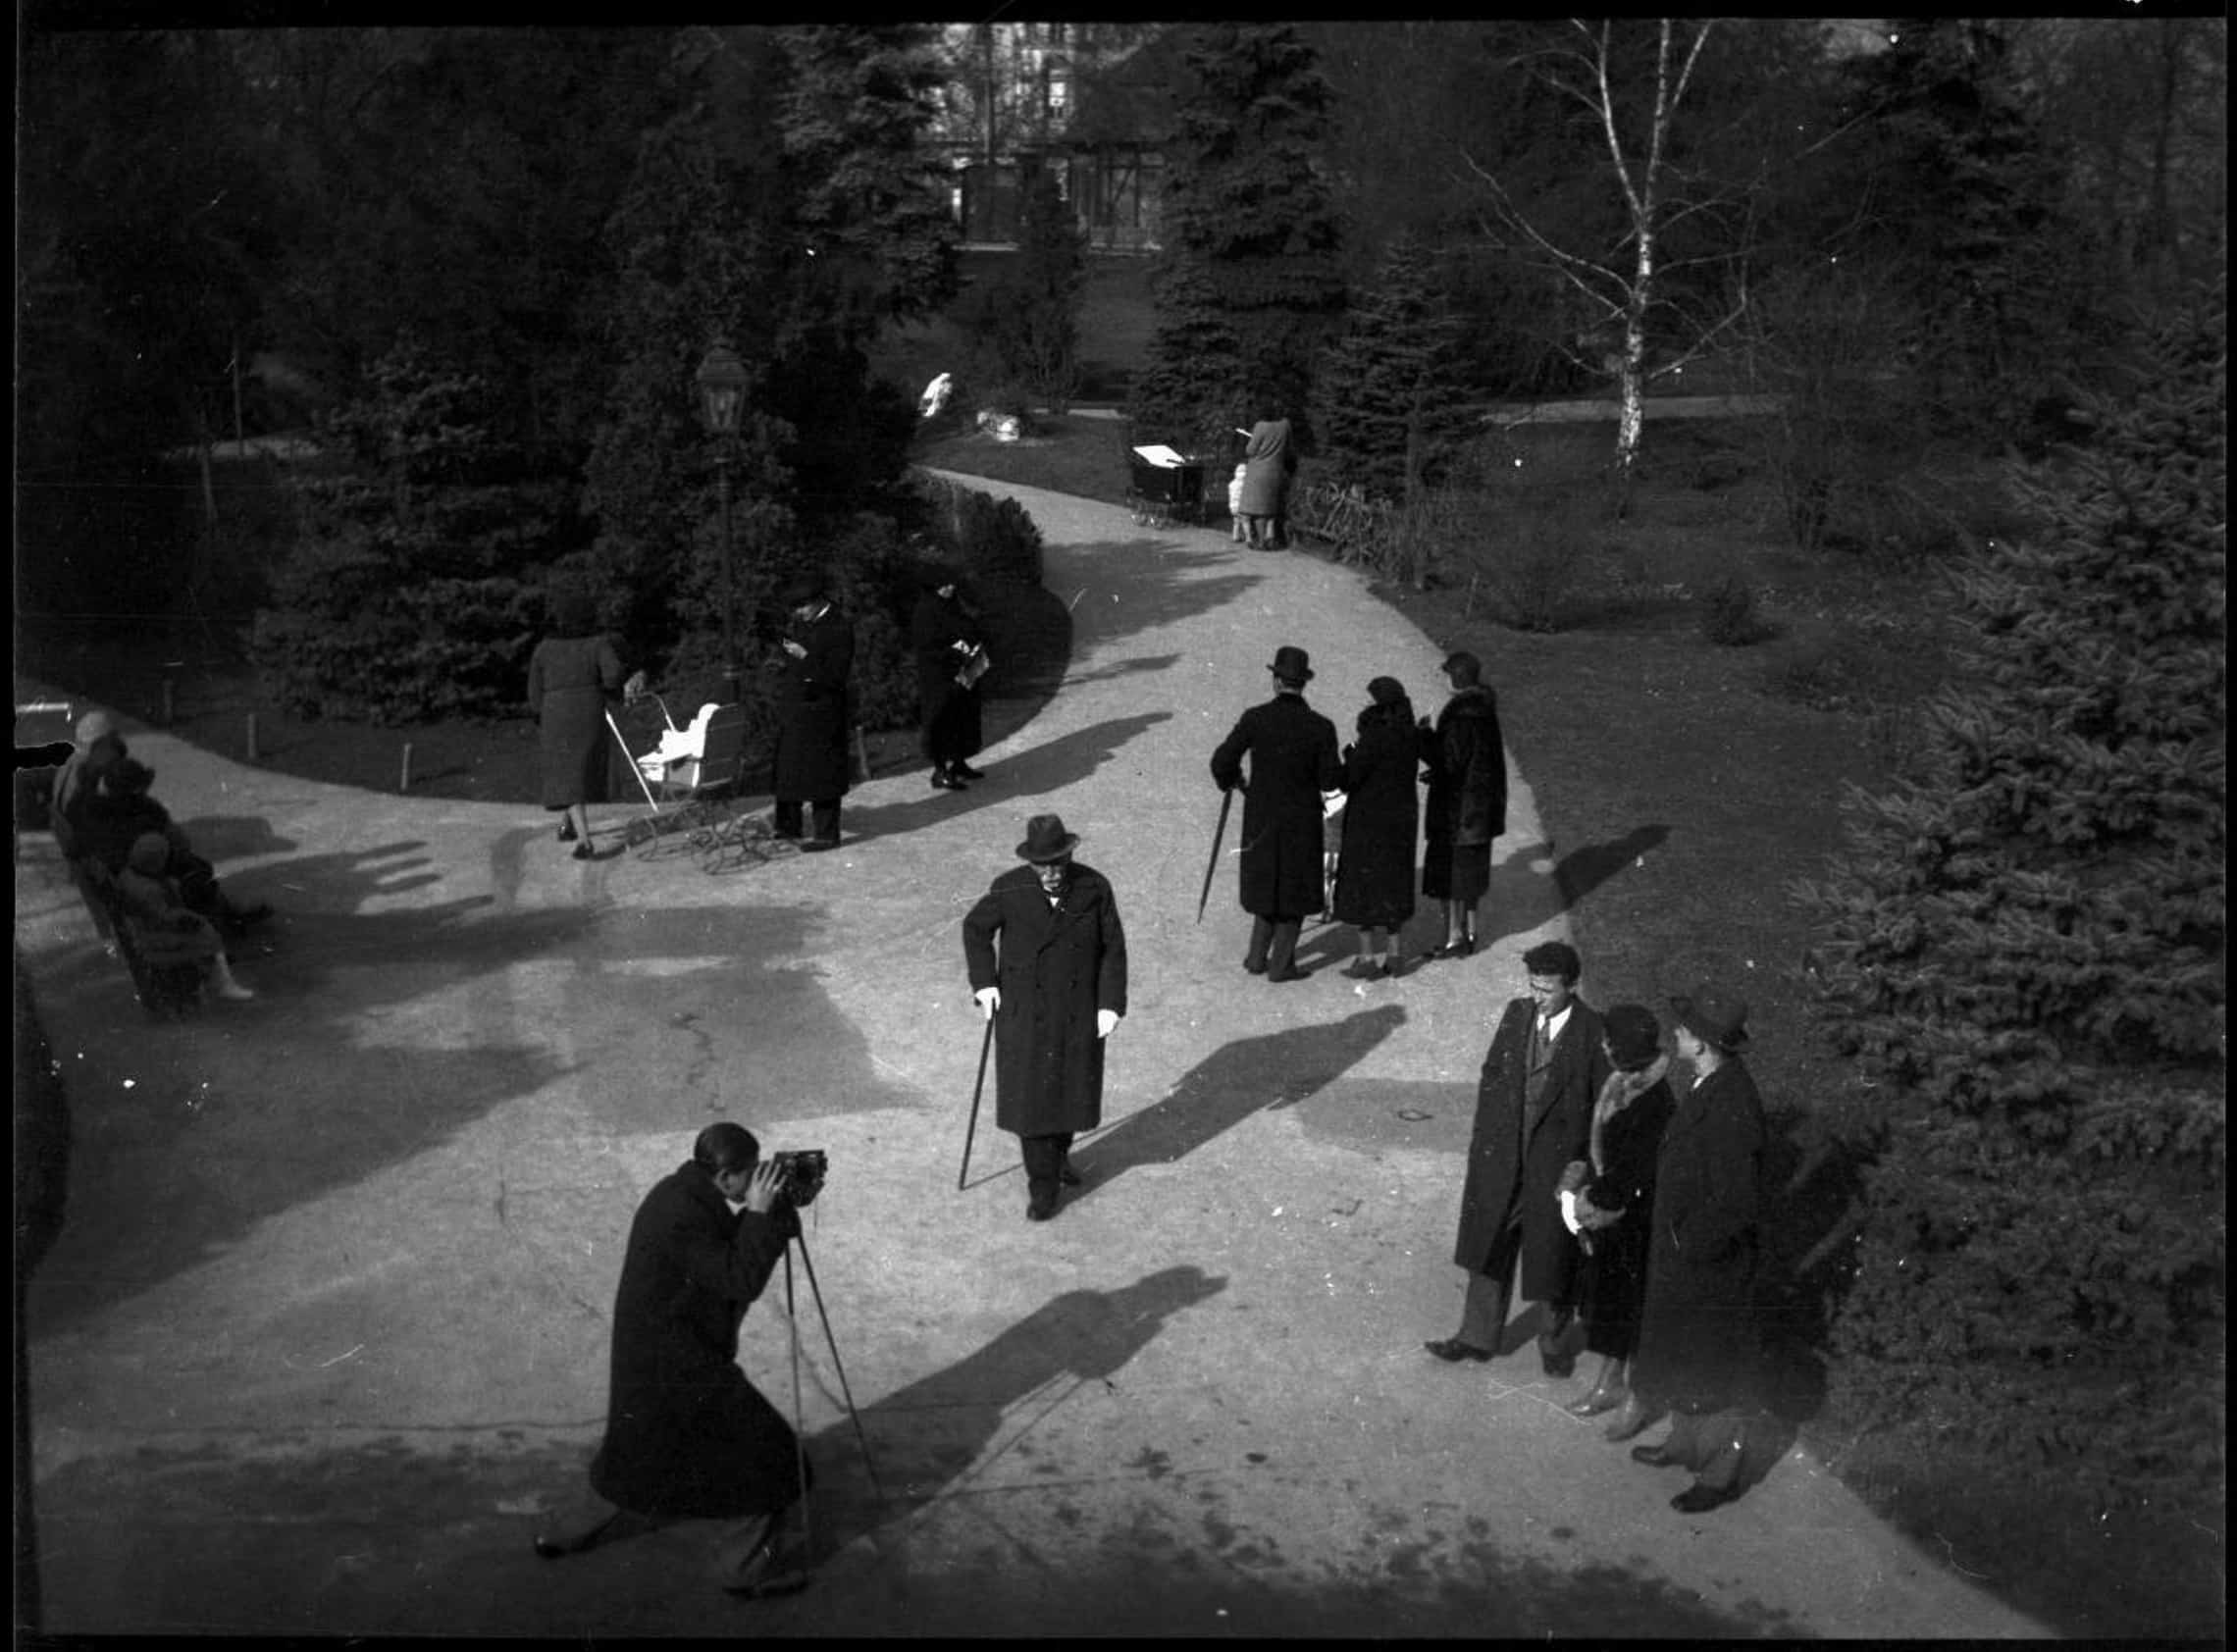 8a. Imre Kinszki, <i>Fénykép készül a parkban, sétáló emberek</i> (“Setting up a photograph in the park, pedestrians”), 1935 © FSZEK